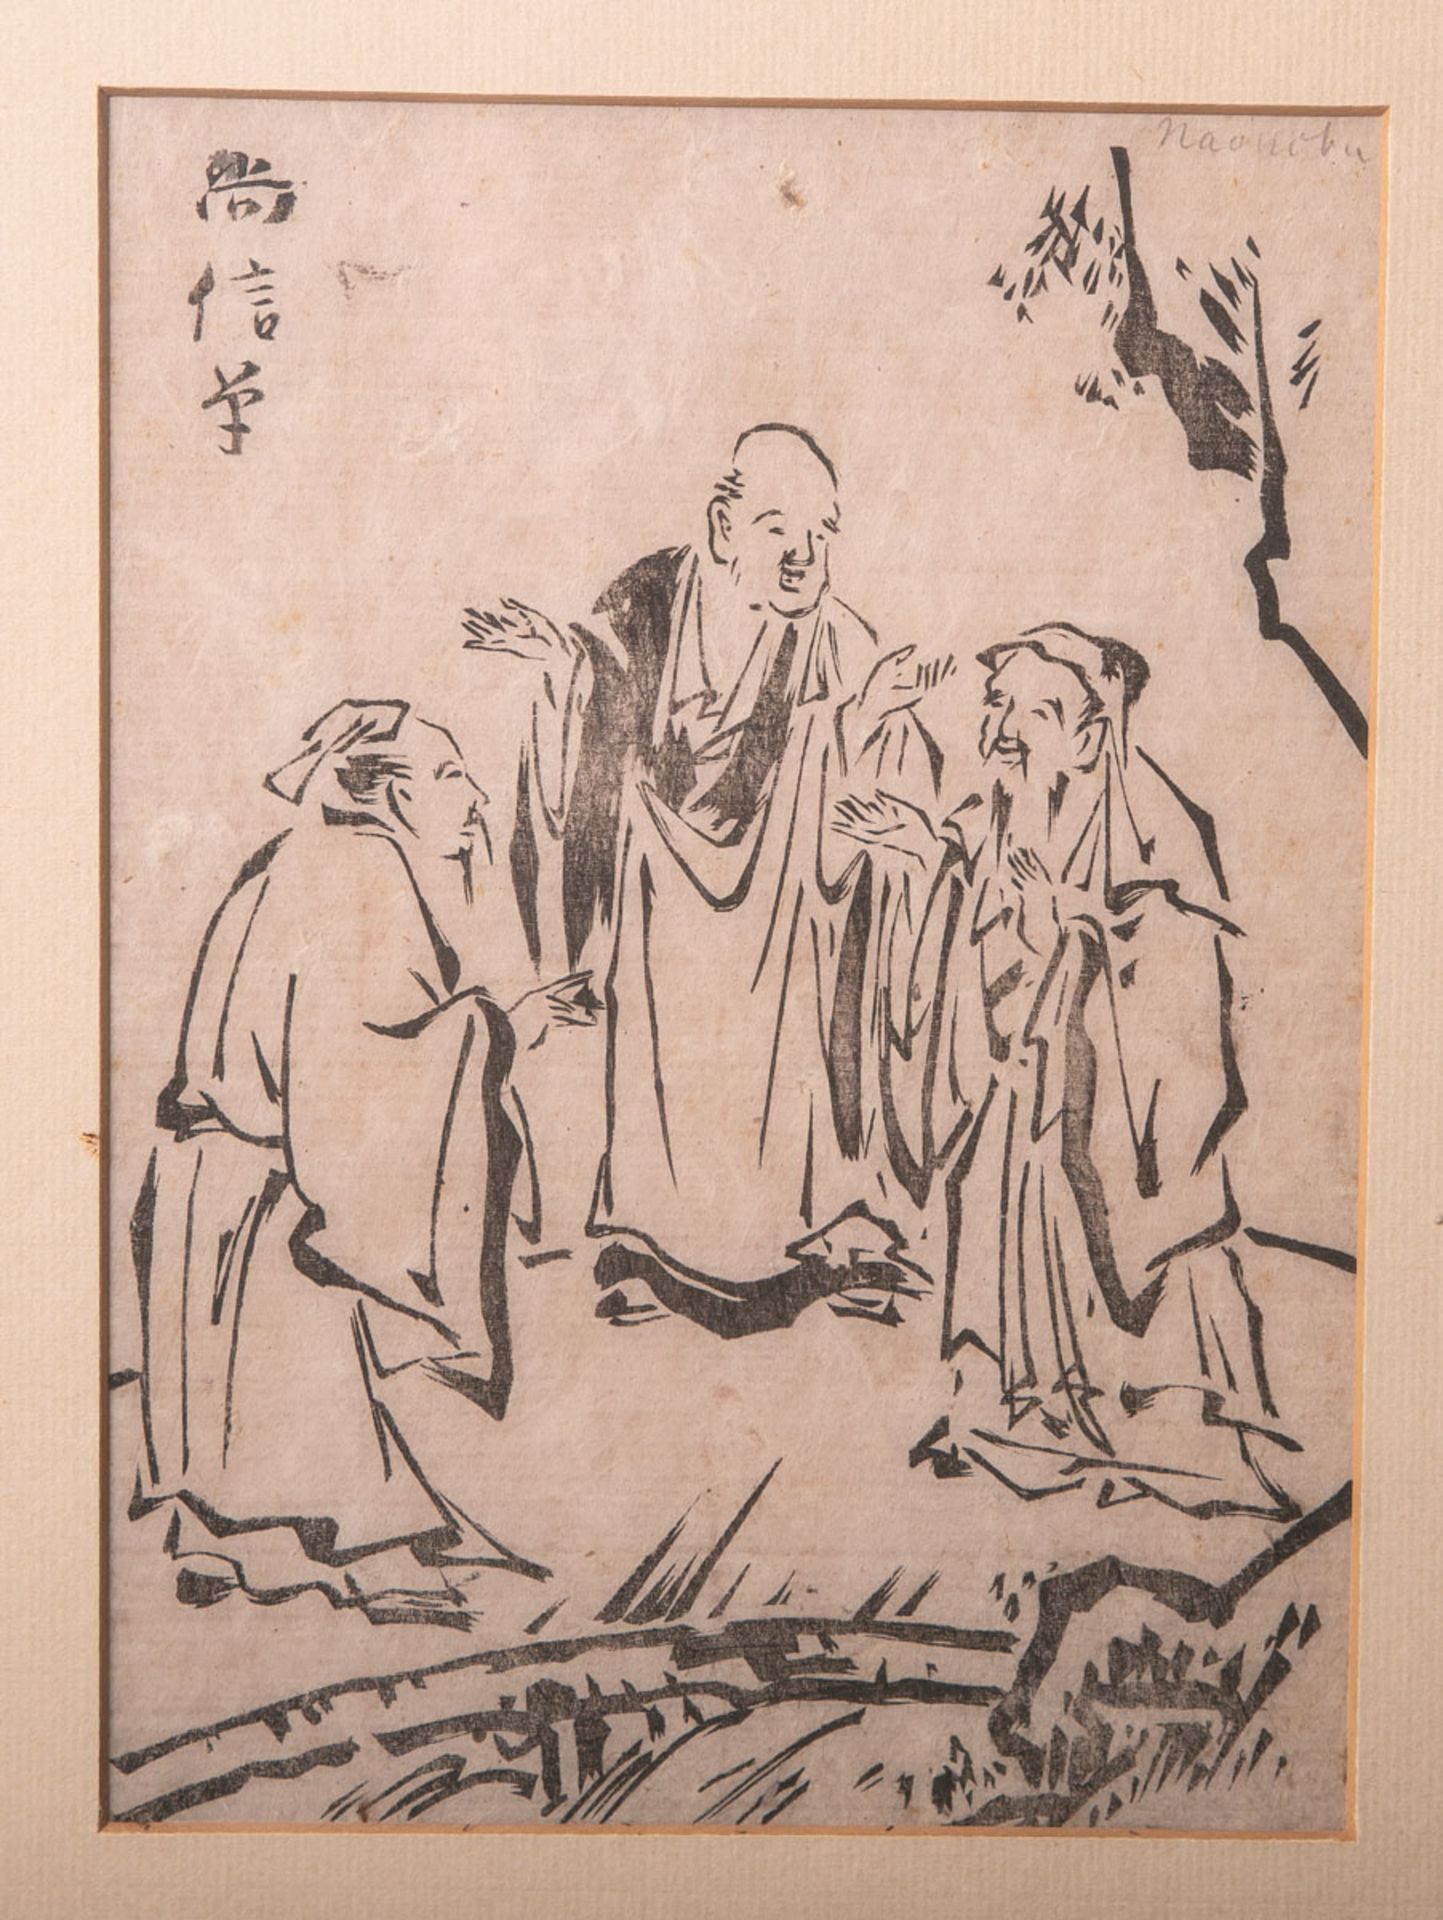 Naonobu, Kano (1607-1650), Darstellung von drei Männern im Gespräch, wohl